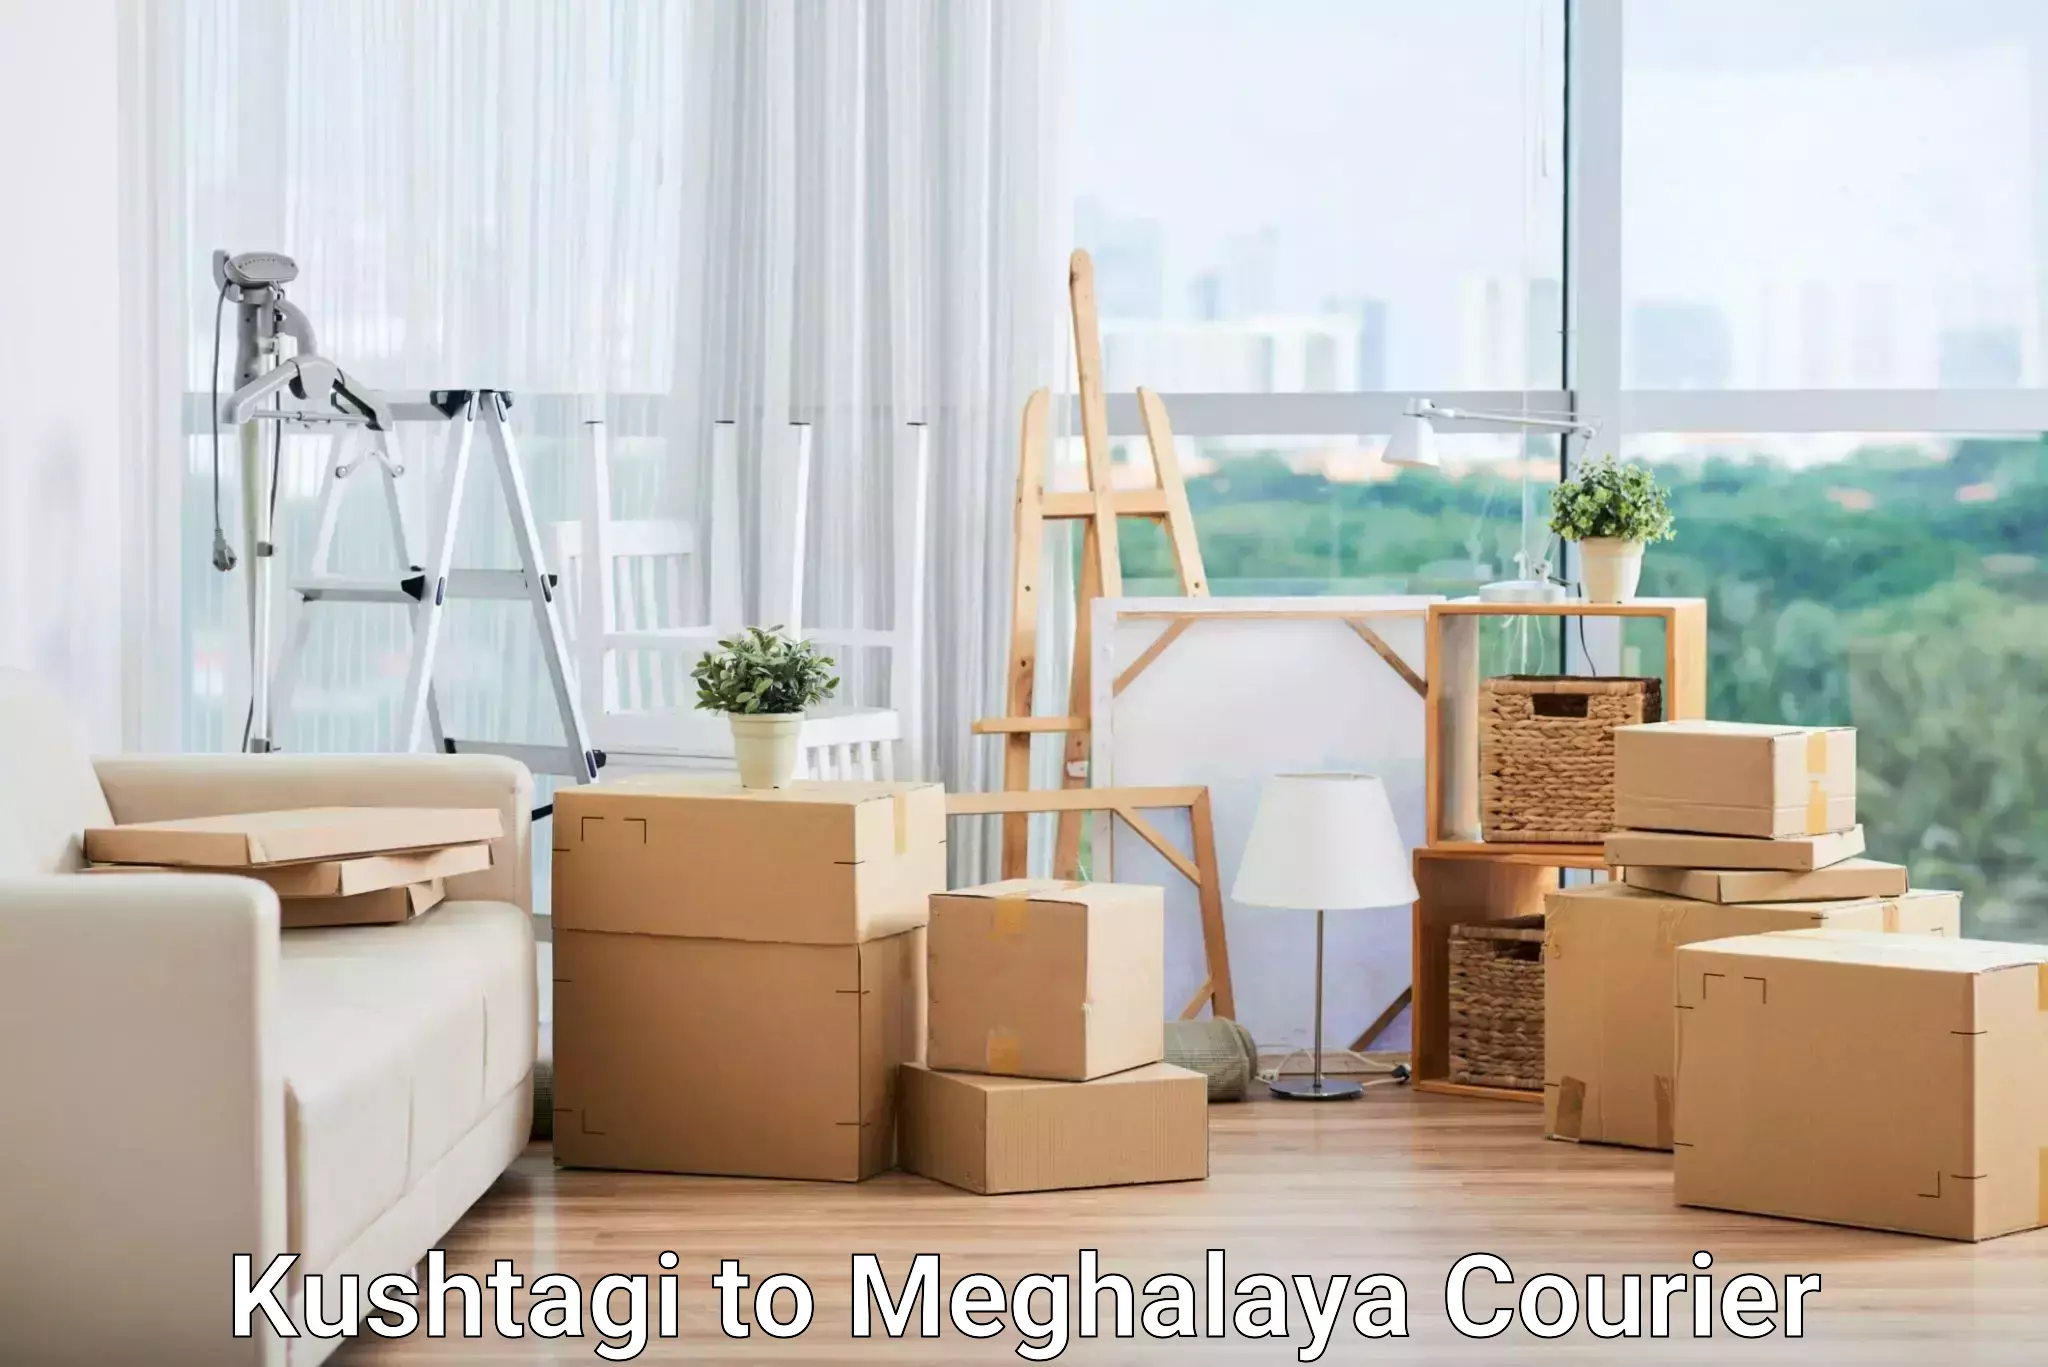 International courier rates Kushtagi to Meghalaya